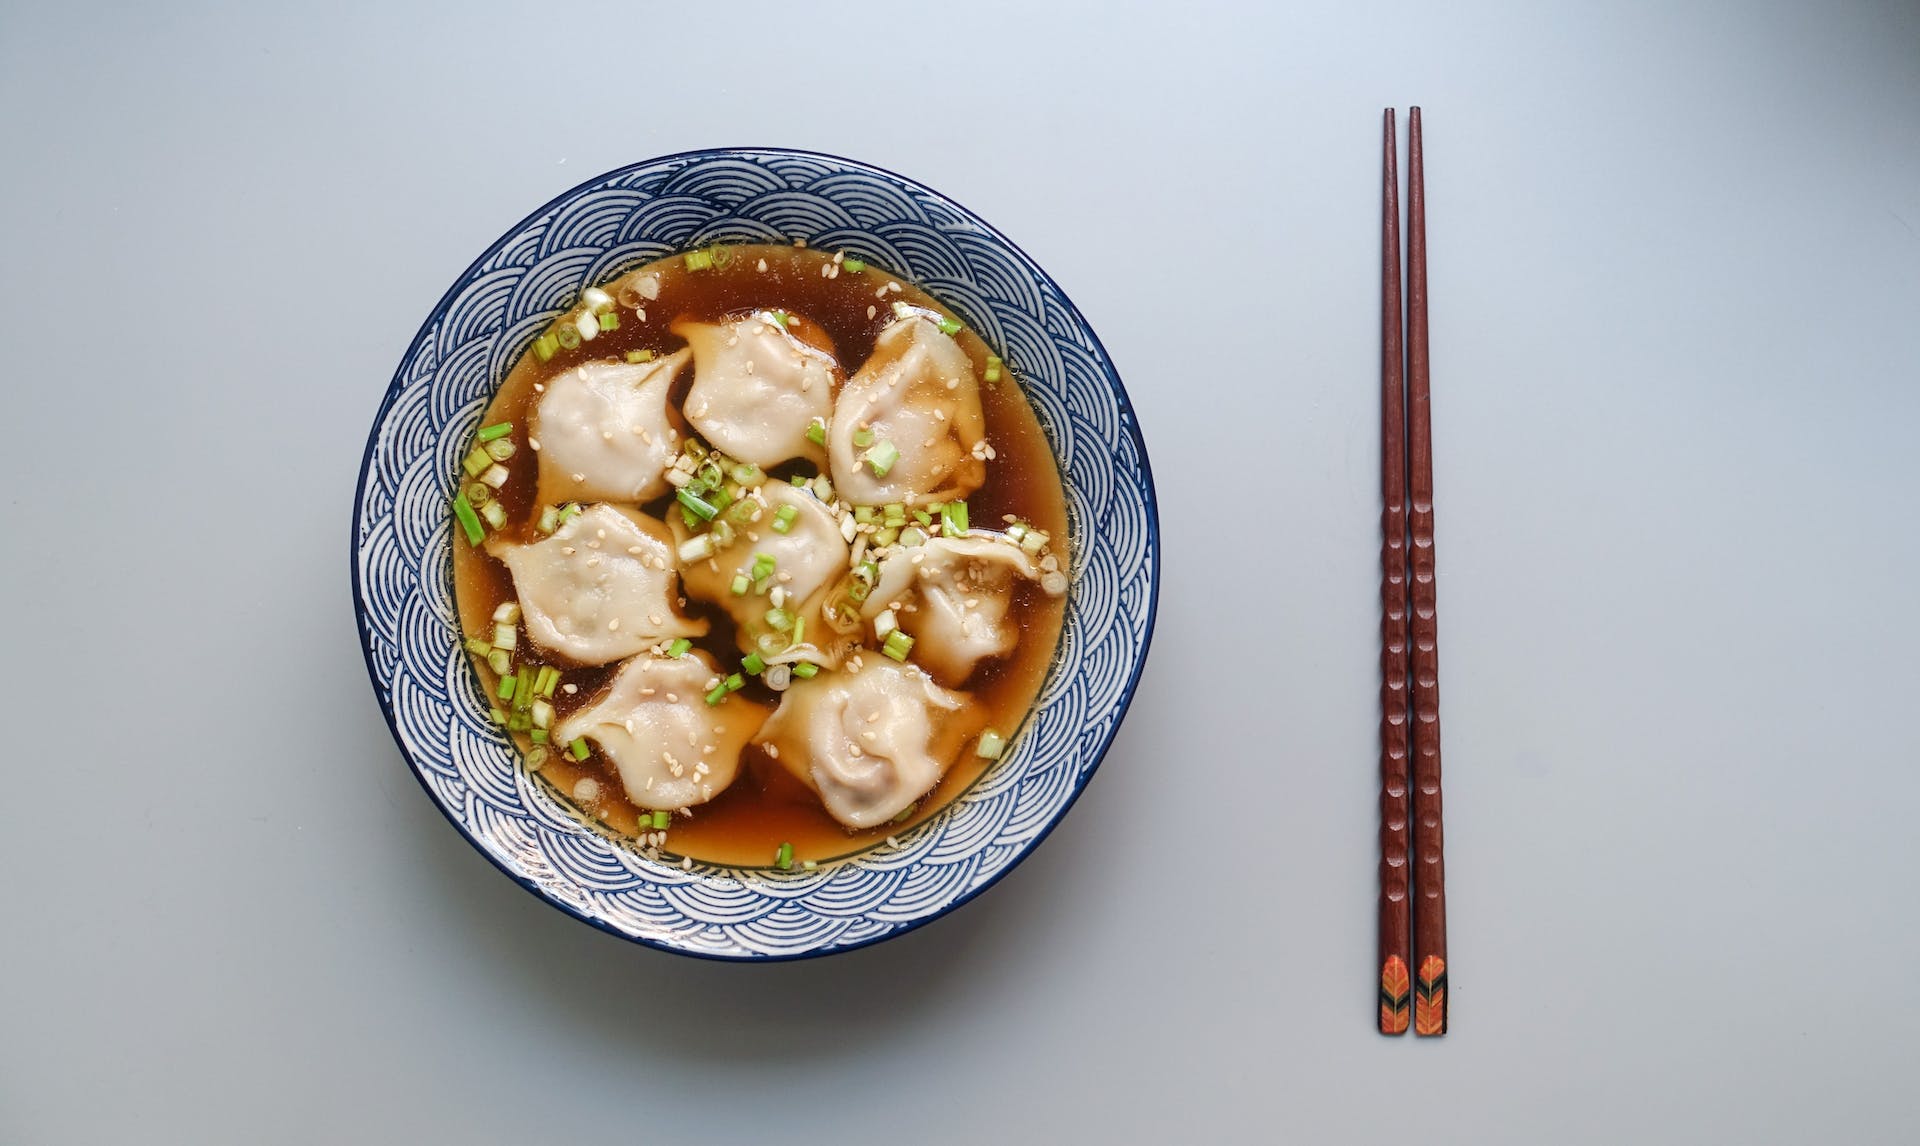 Bowl of dumplings | Source: Pexels